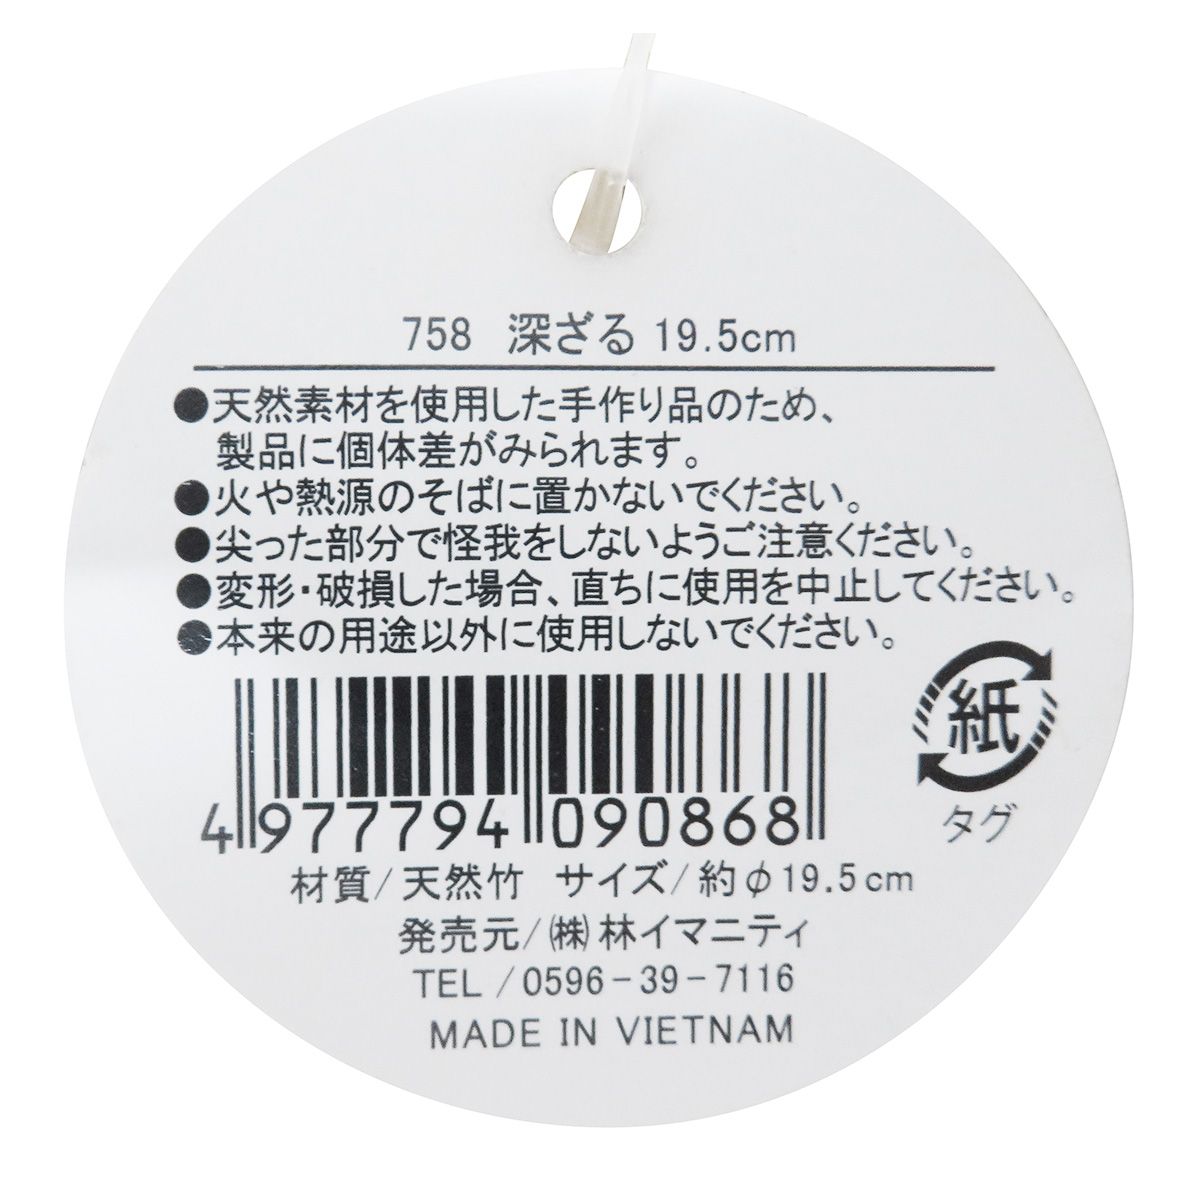 竹ざる 蕎麦 深ざる ザル蕎麦 19.5cm 366054